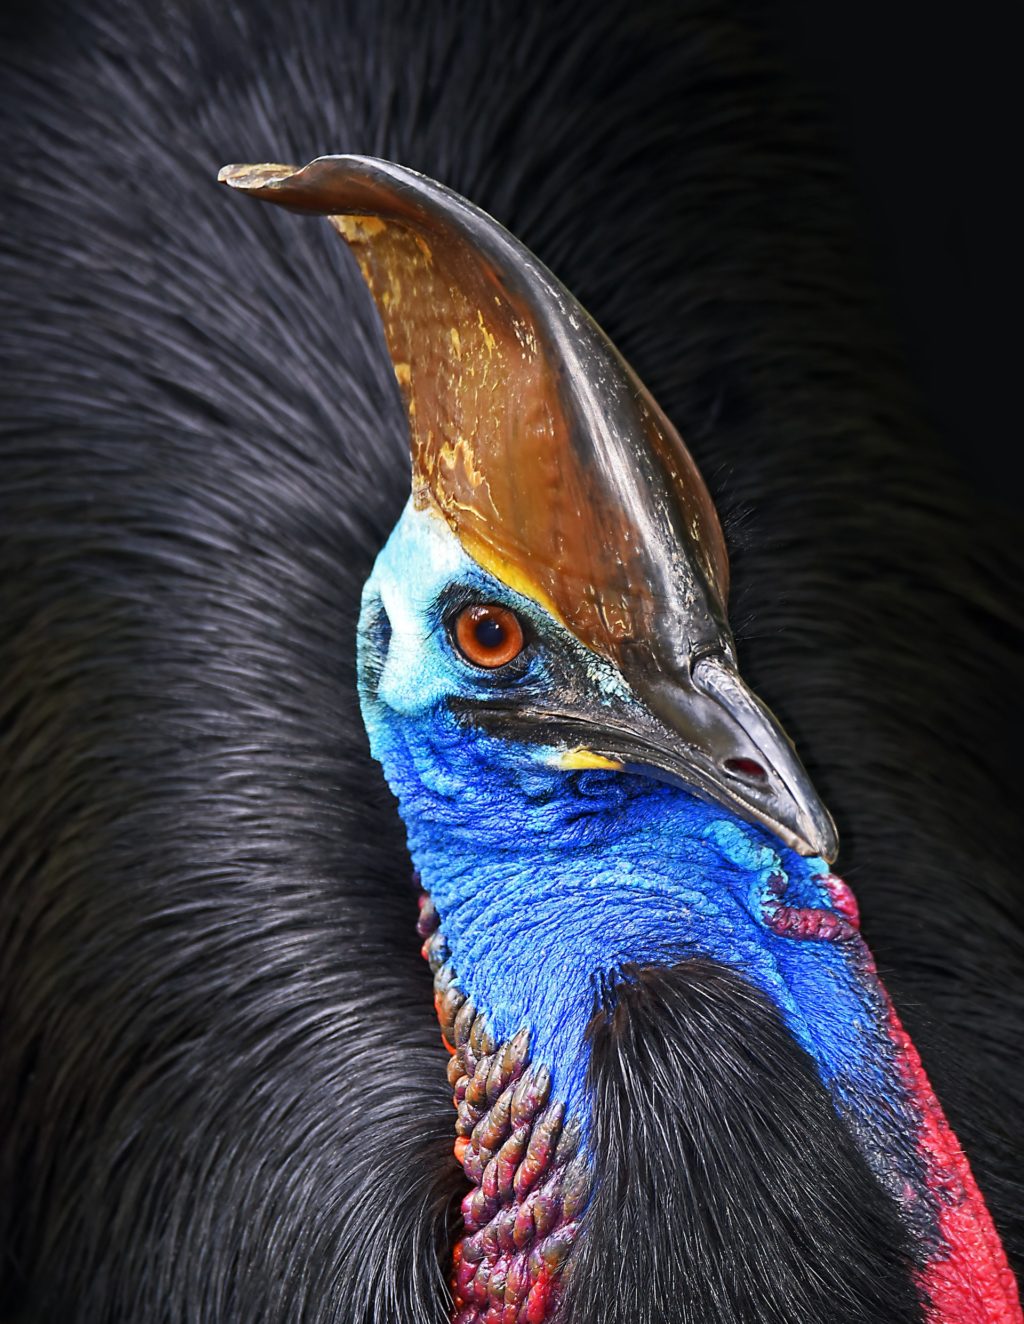 bird with a large beak